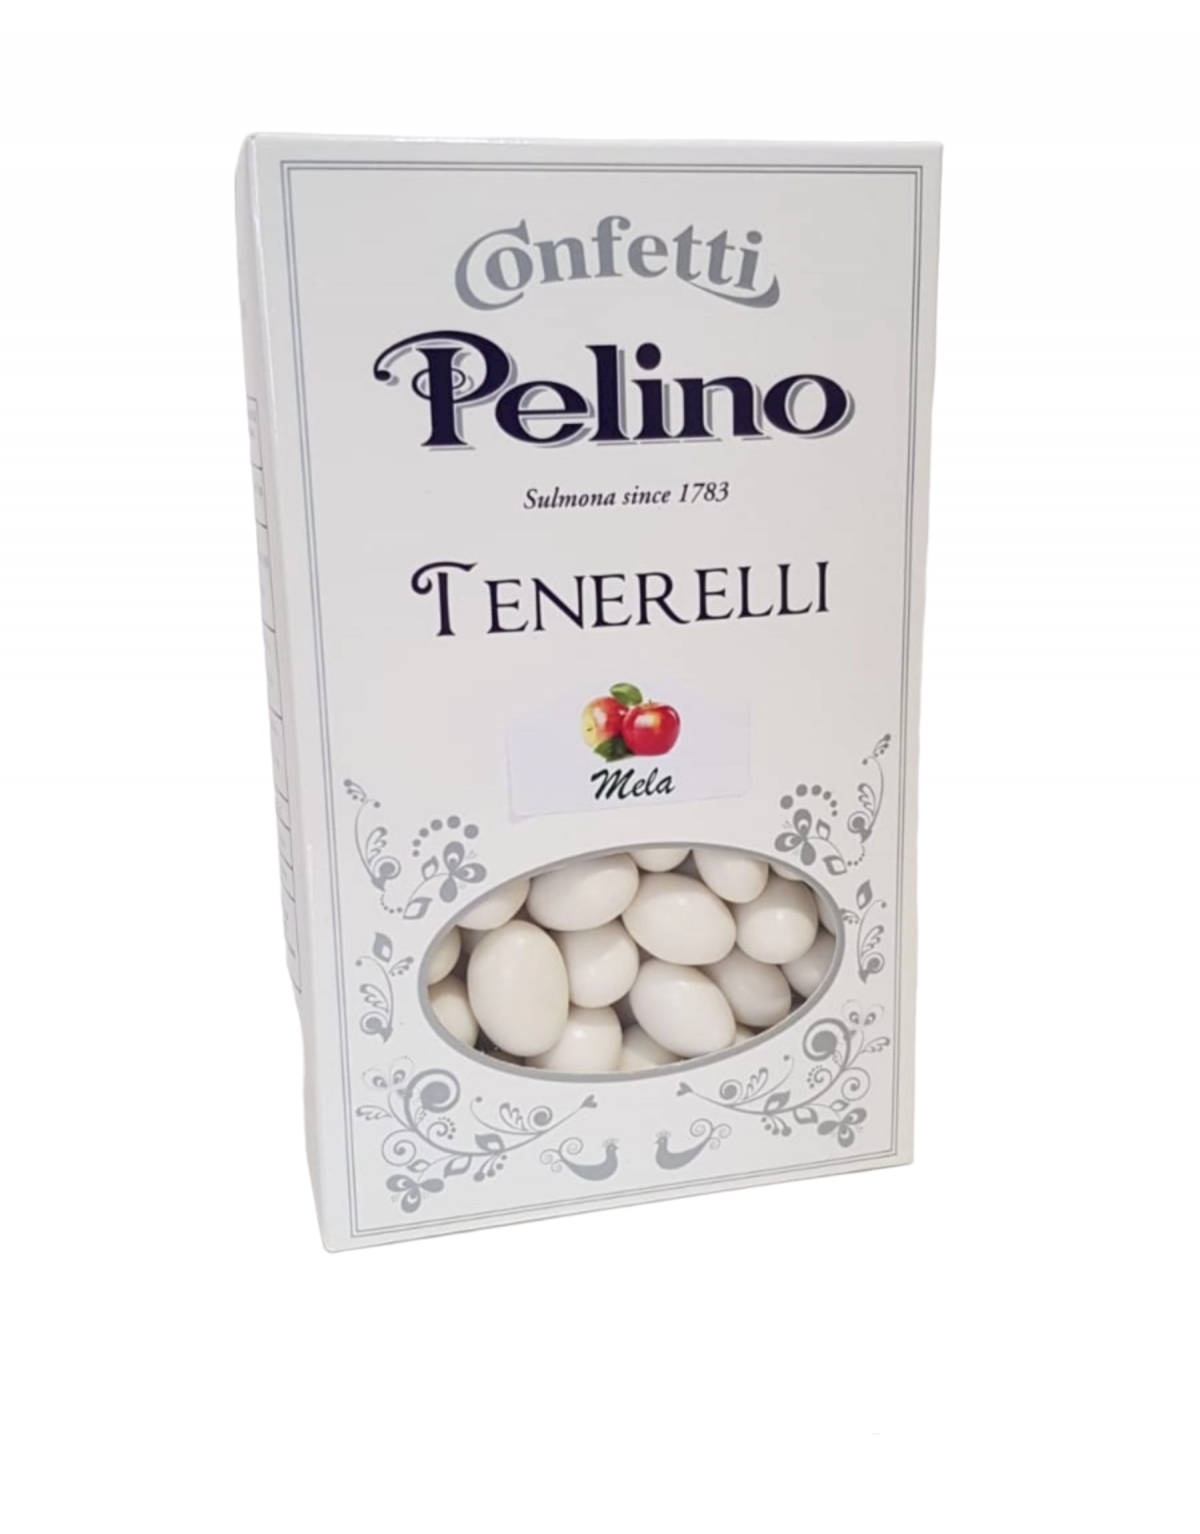 Confetti Pelino Tenerelli -...